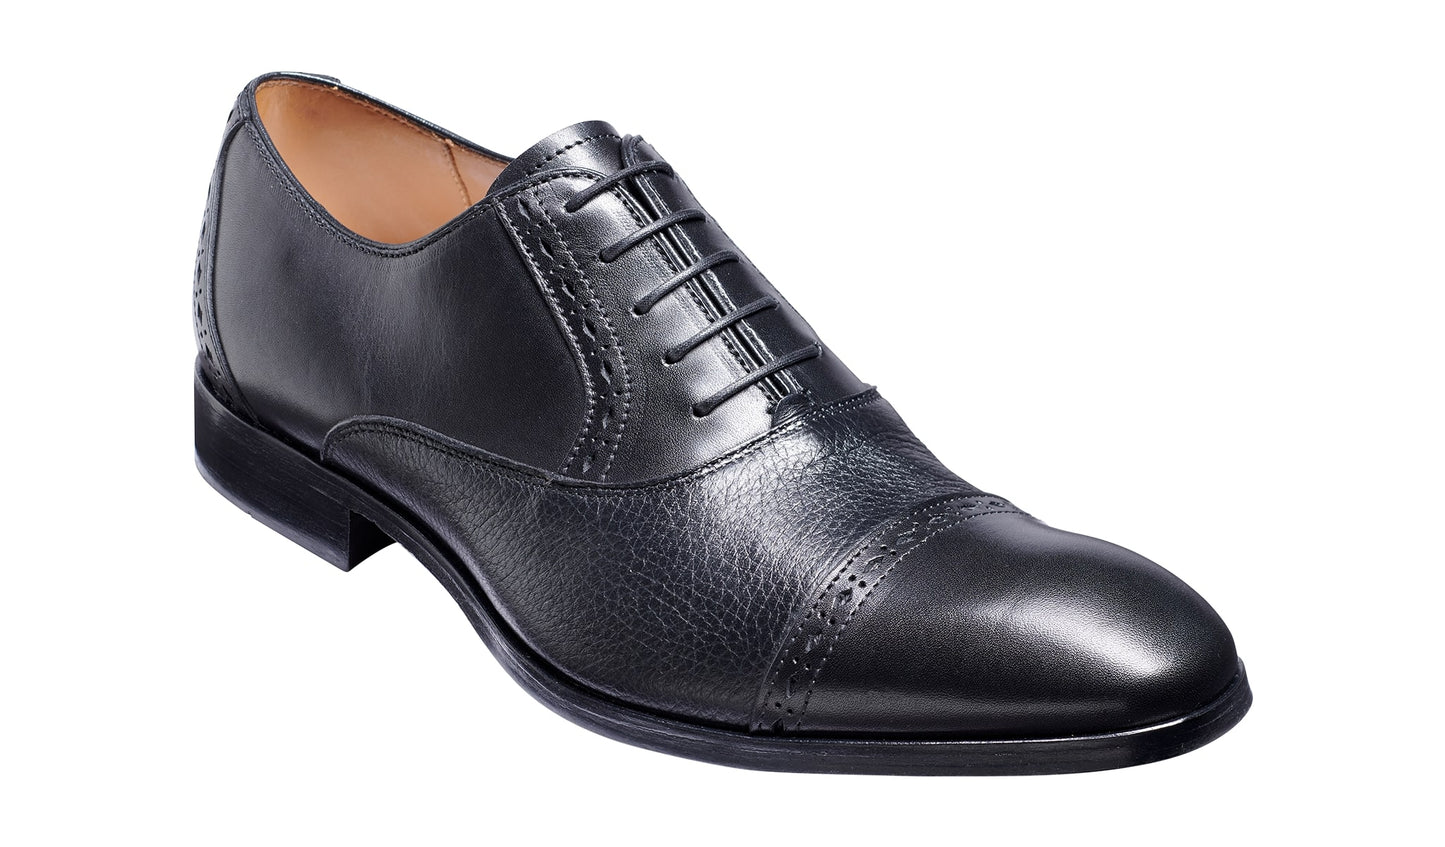 Barker 452317 Ramsgate Black Calf/Black Deerskin Oxford Shoes